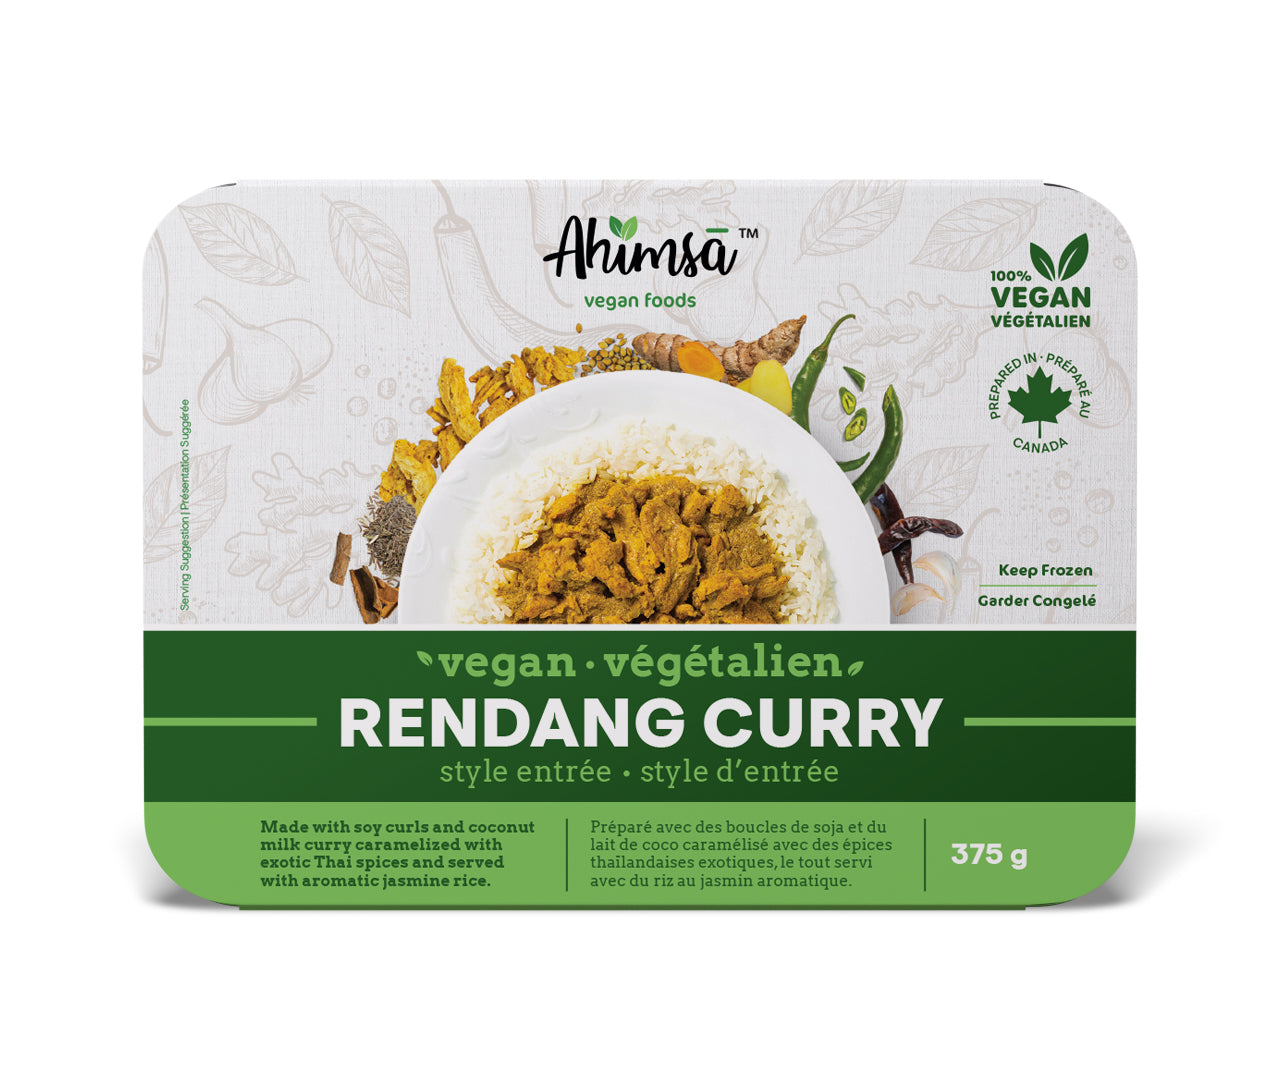 Vegan Rendang Curry - Ahimsa Vegan Foods